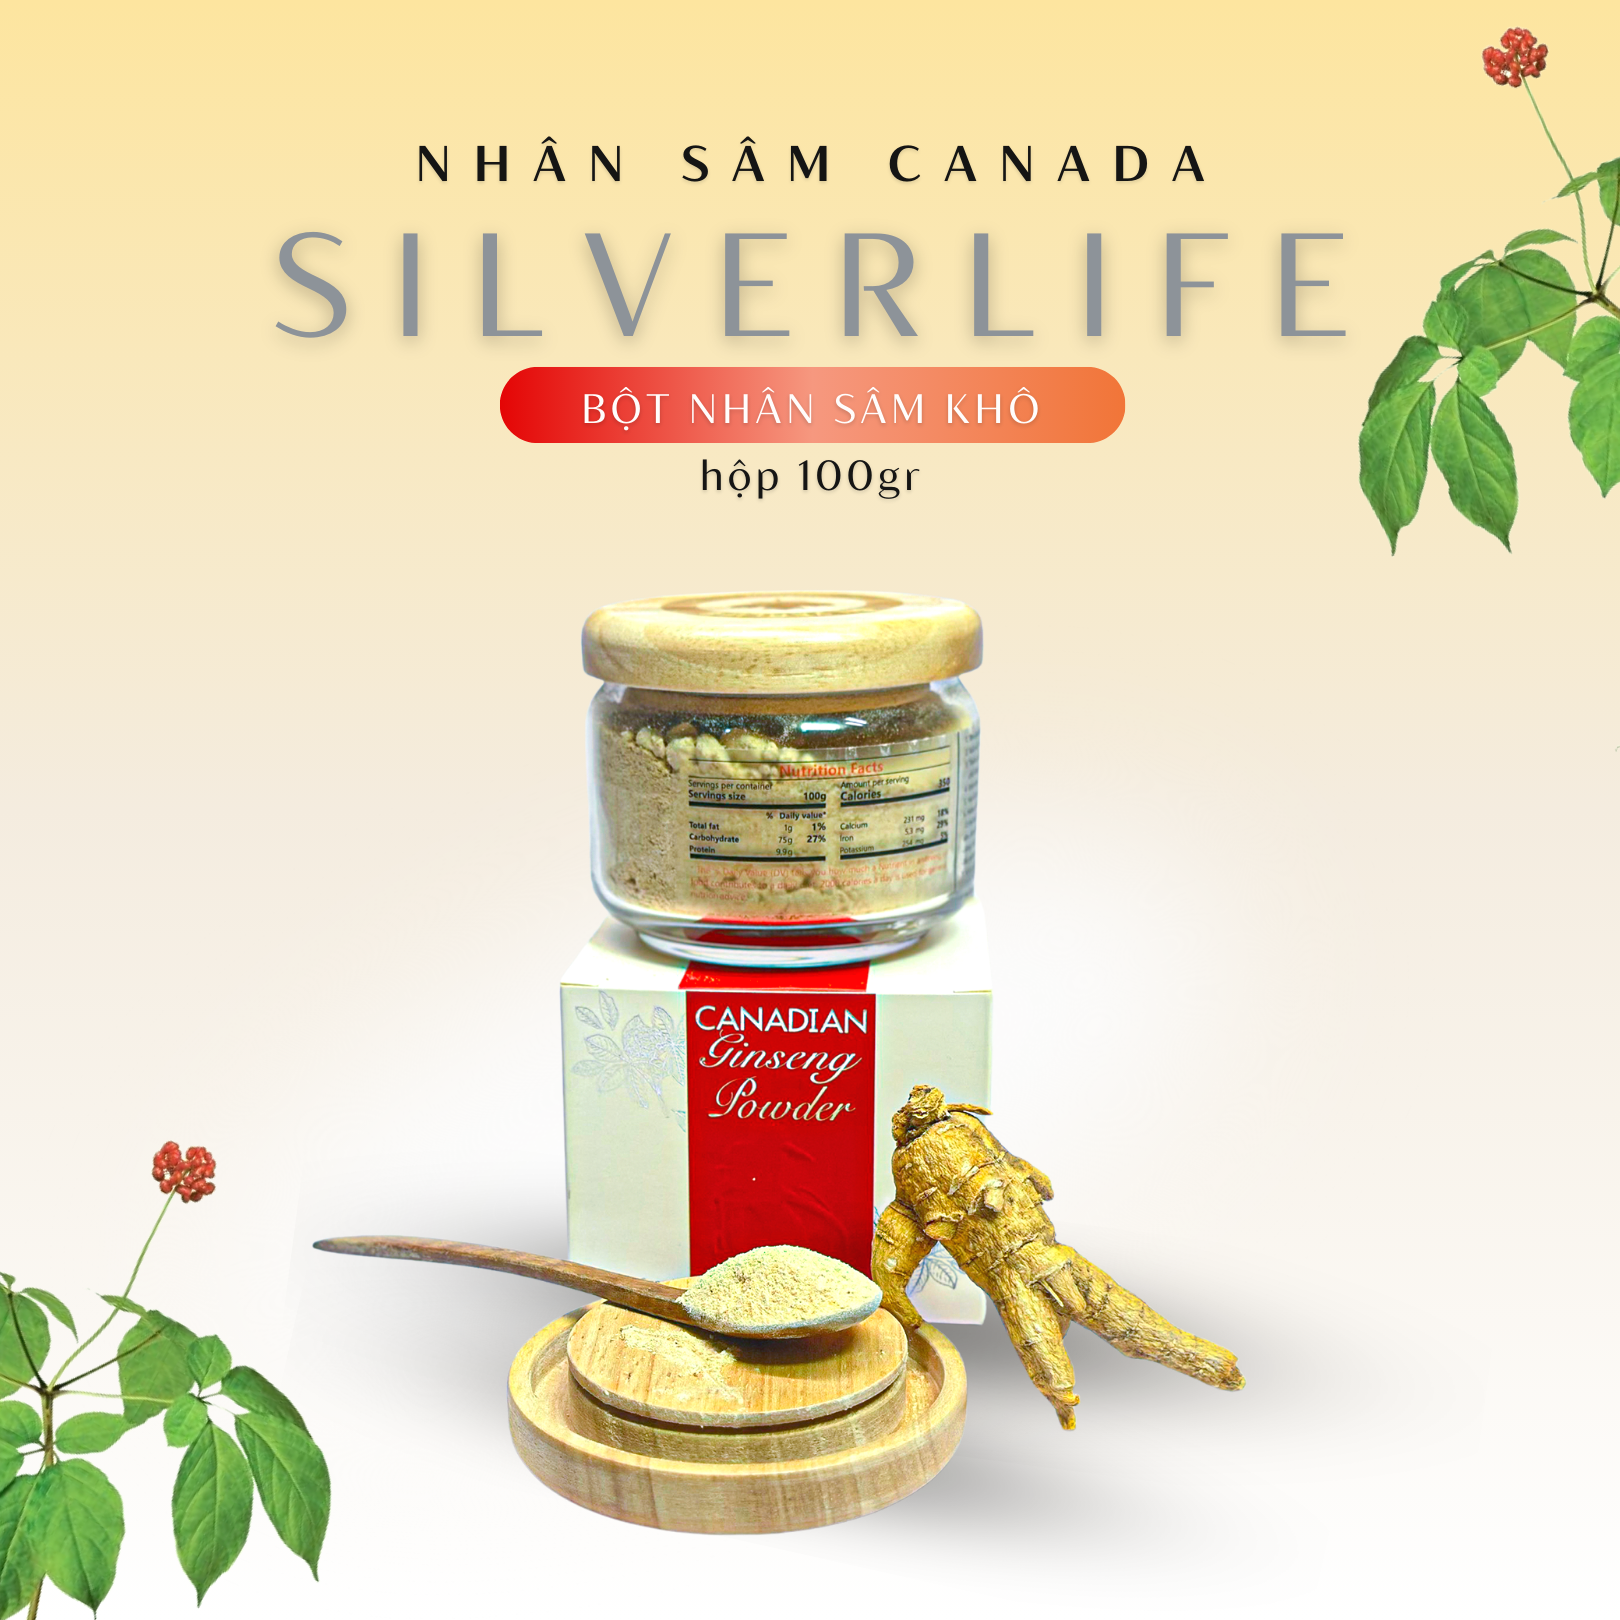 Nhân sâm Canada SilverLife Powder | Bột nhân sâm khô Canada nguyên chất 5 năm tuổi